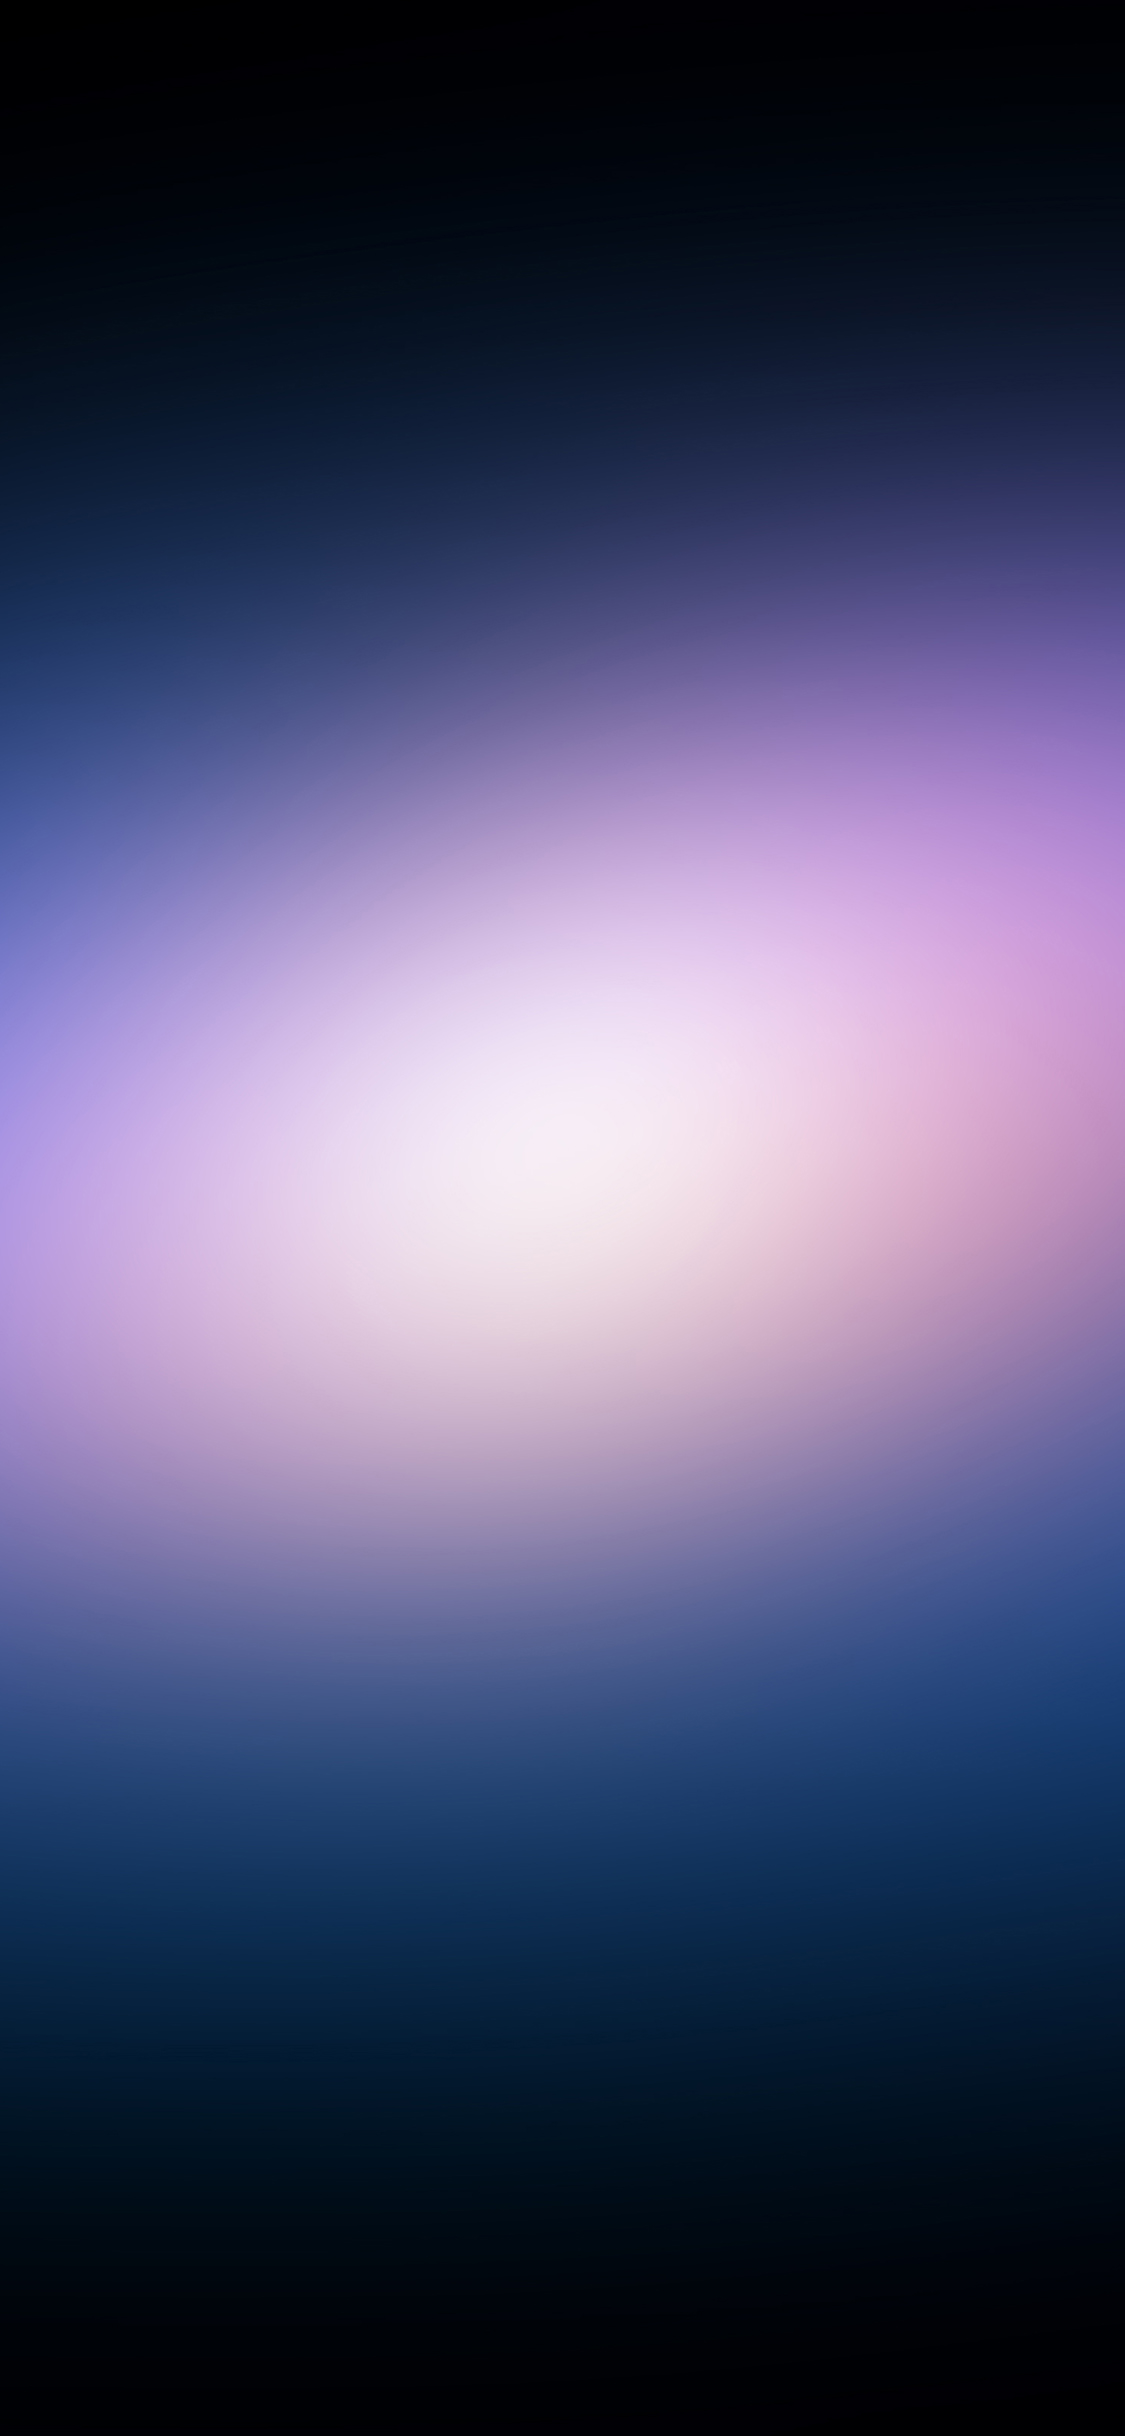 klassisches mac wallpaper,blau,violett,lila,himmel,atmosphäre